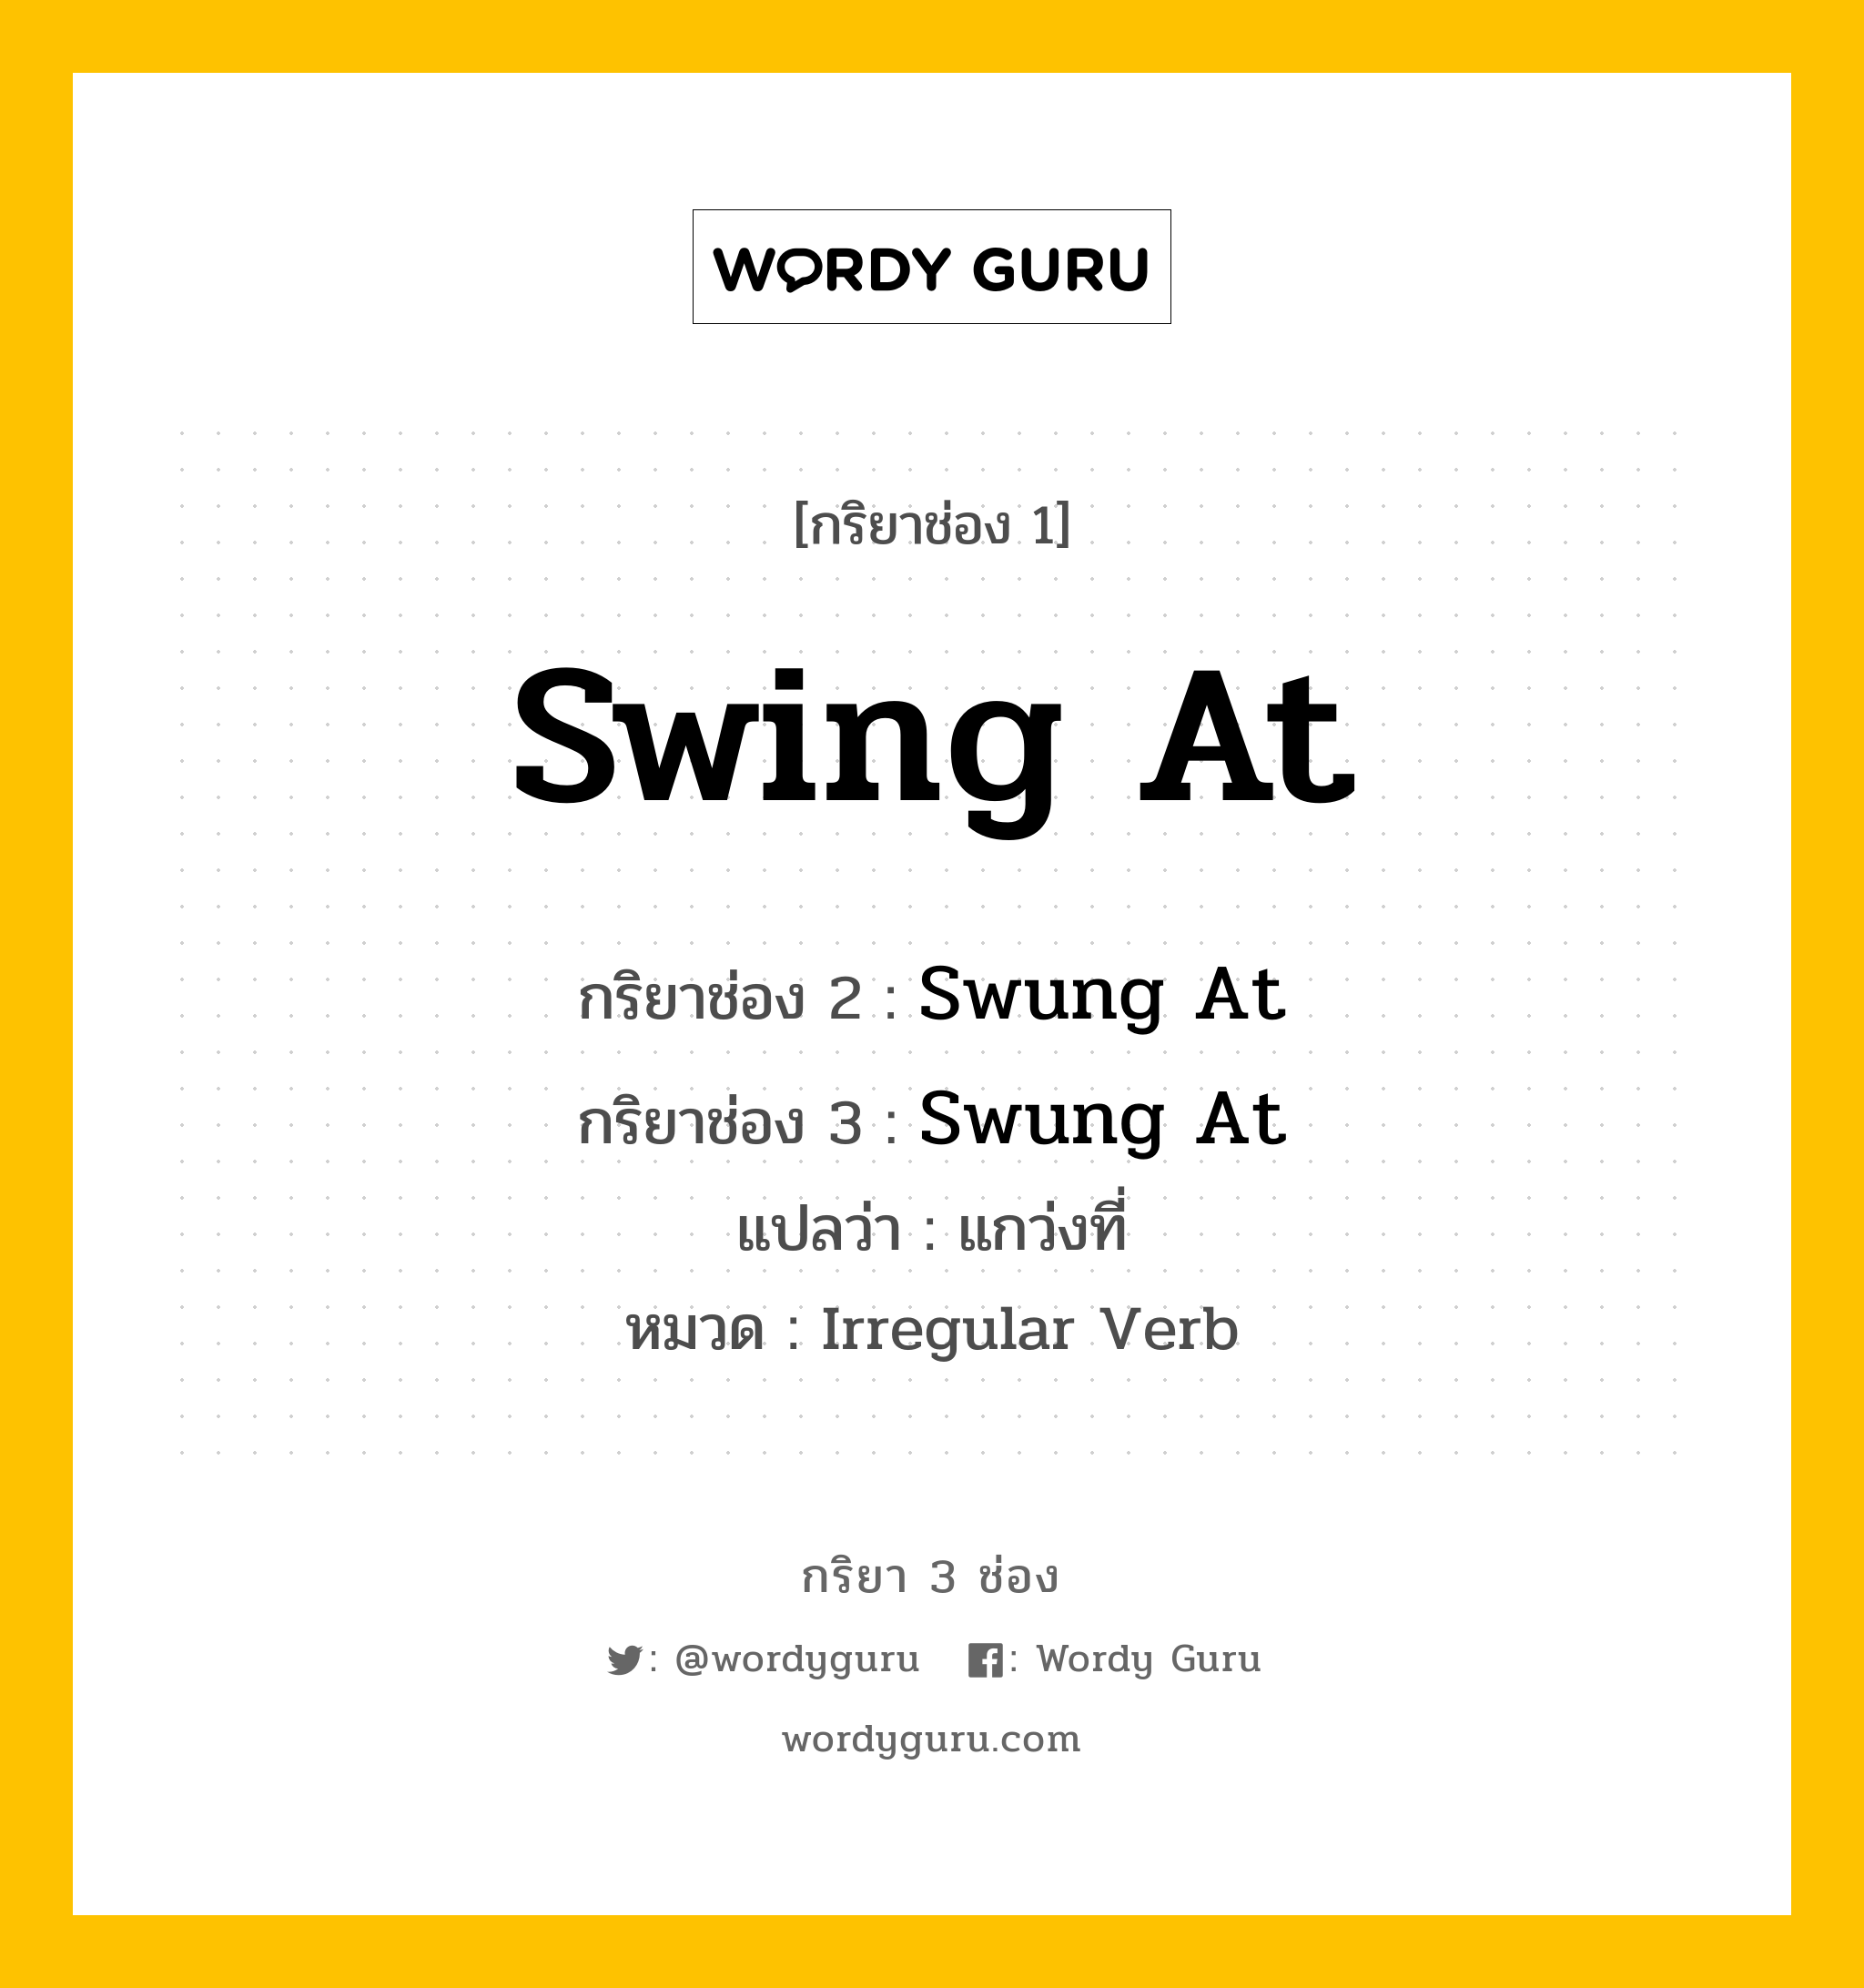 กริยา 3 ช่อง: Swing At ช่อง 2 Swing At ช่อง 3 คืออะไร, กริยาช่อง 1 Swing At กริยาช่อง 2 Swung At กริยาช่อง 3 Swung At แปลว่า แกว่งที่ หมวด Irregular Verb หมวด Irregular Verb